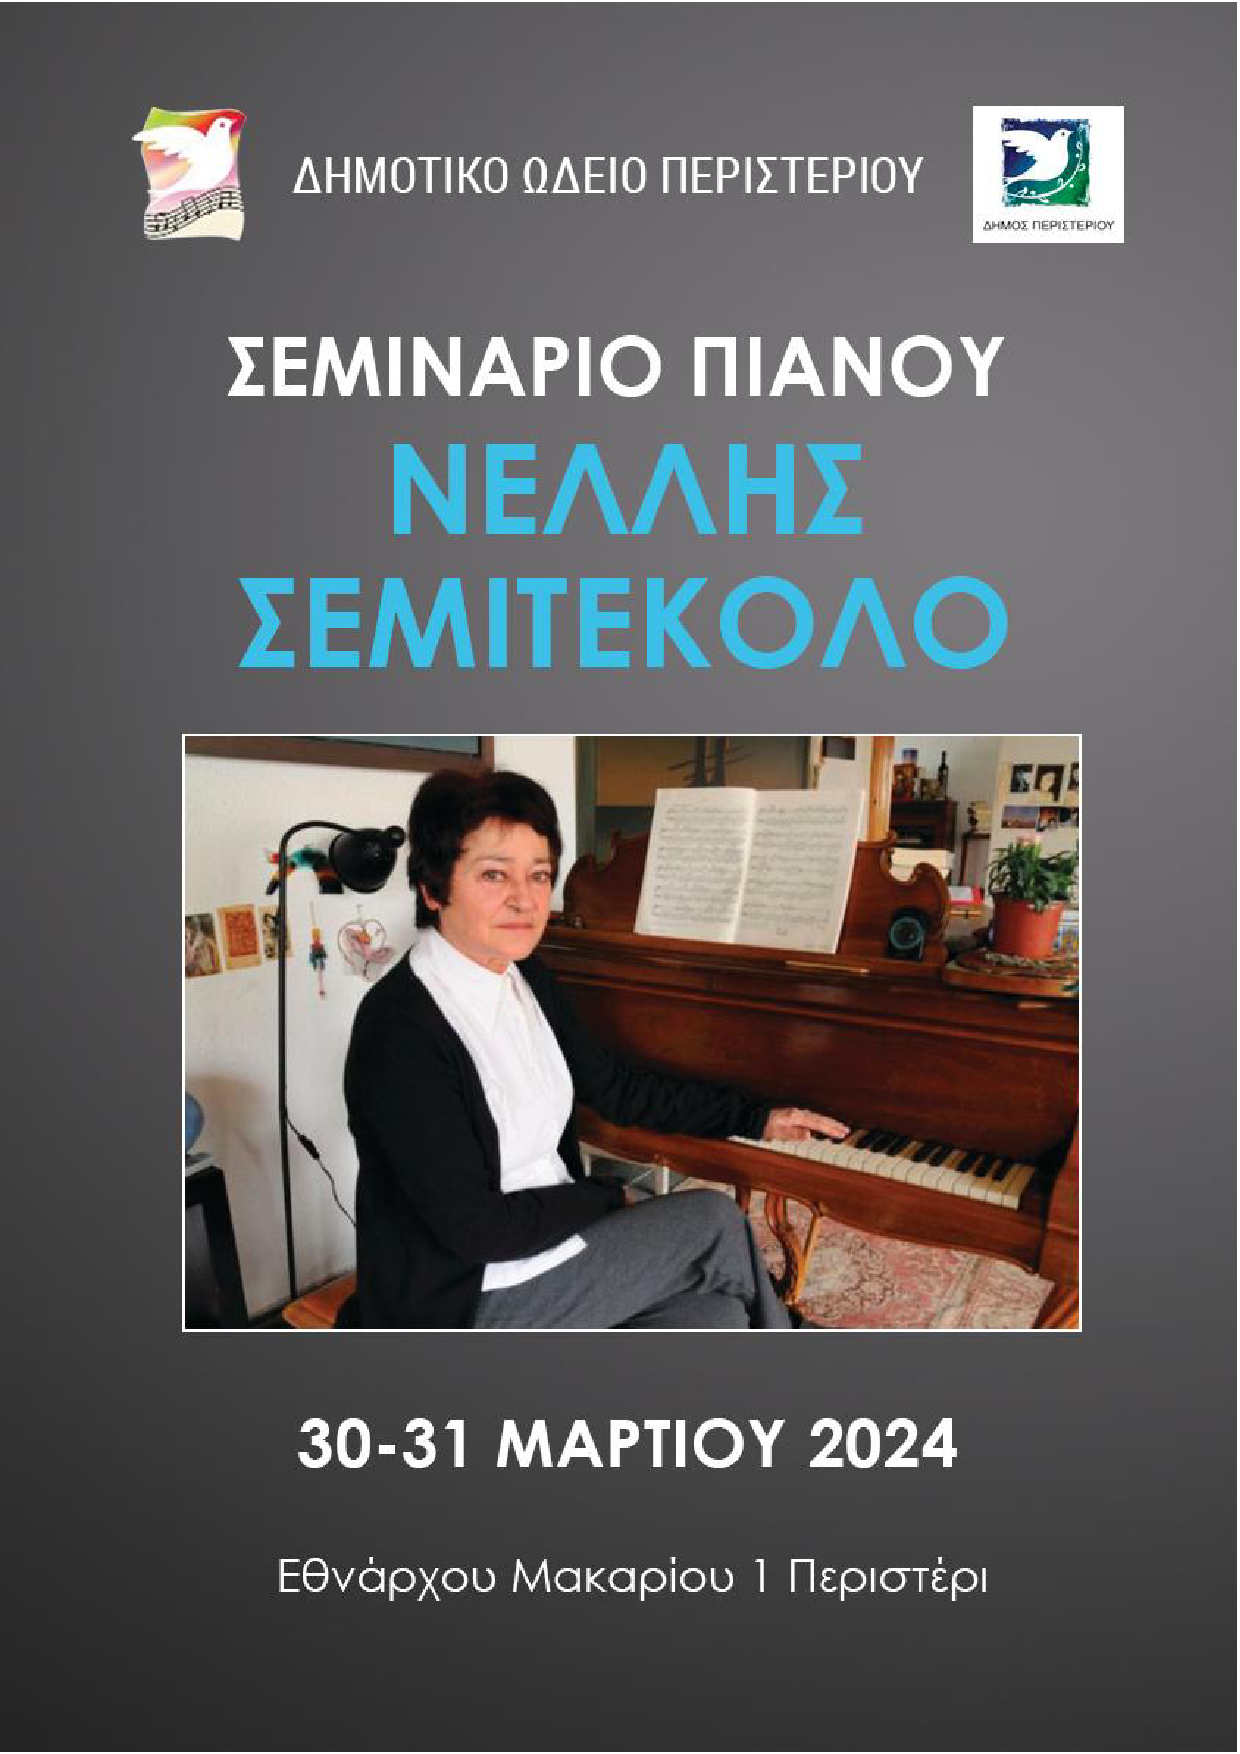  Σεμινάριο πιάνου με τη σολίστ Νέλλη Σεμιτέκολο από το Δημοτικό Ωδείο Περιστερίου